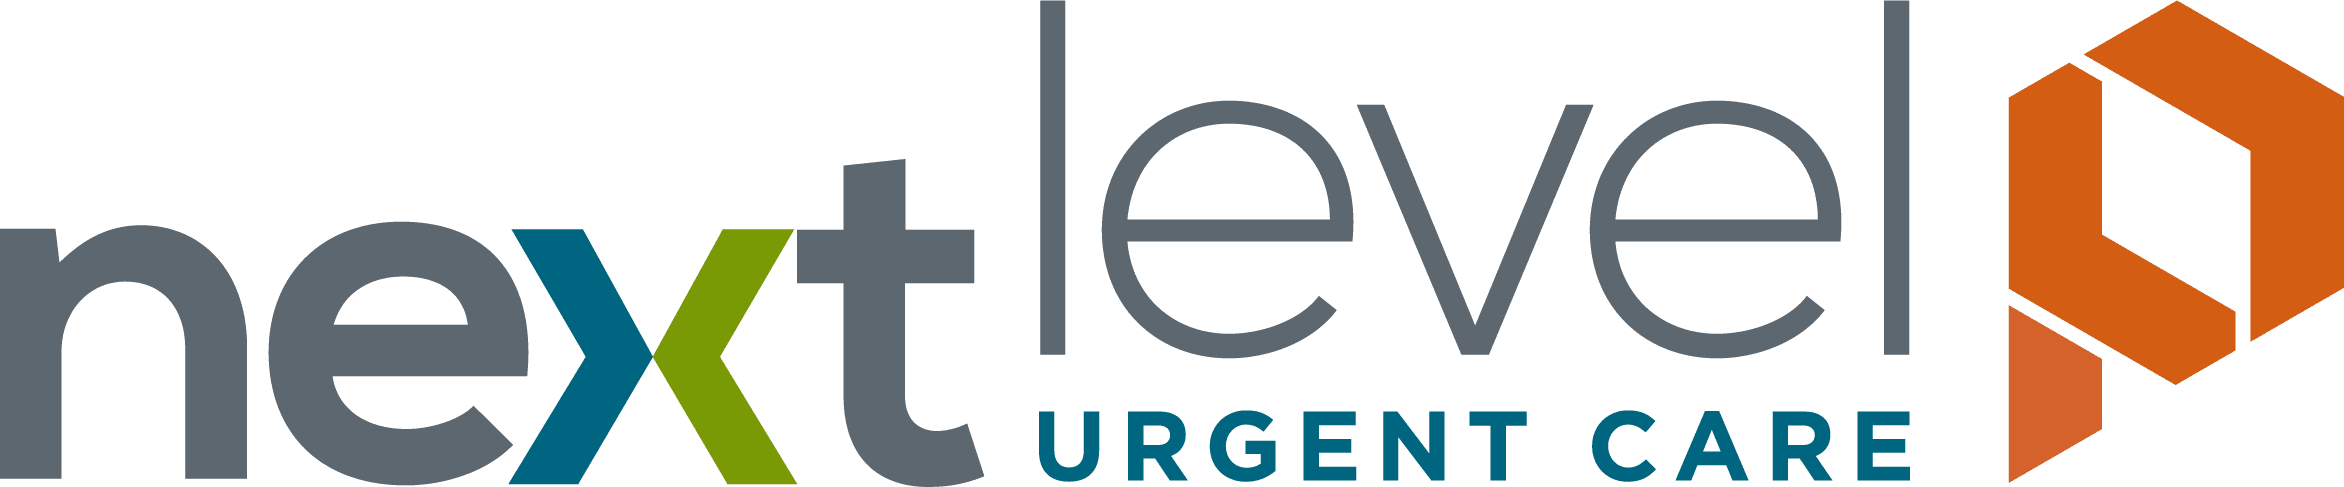 Next-Level-Urgent-Care-P-logo